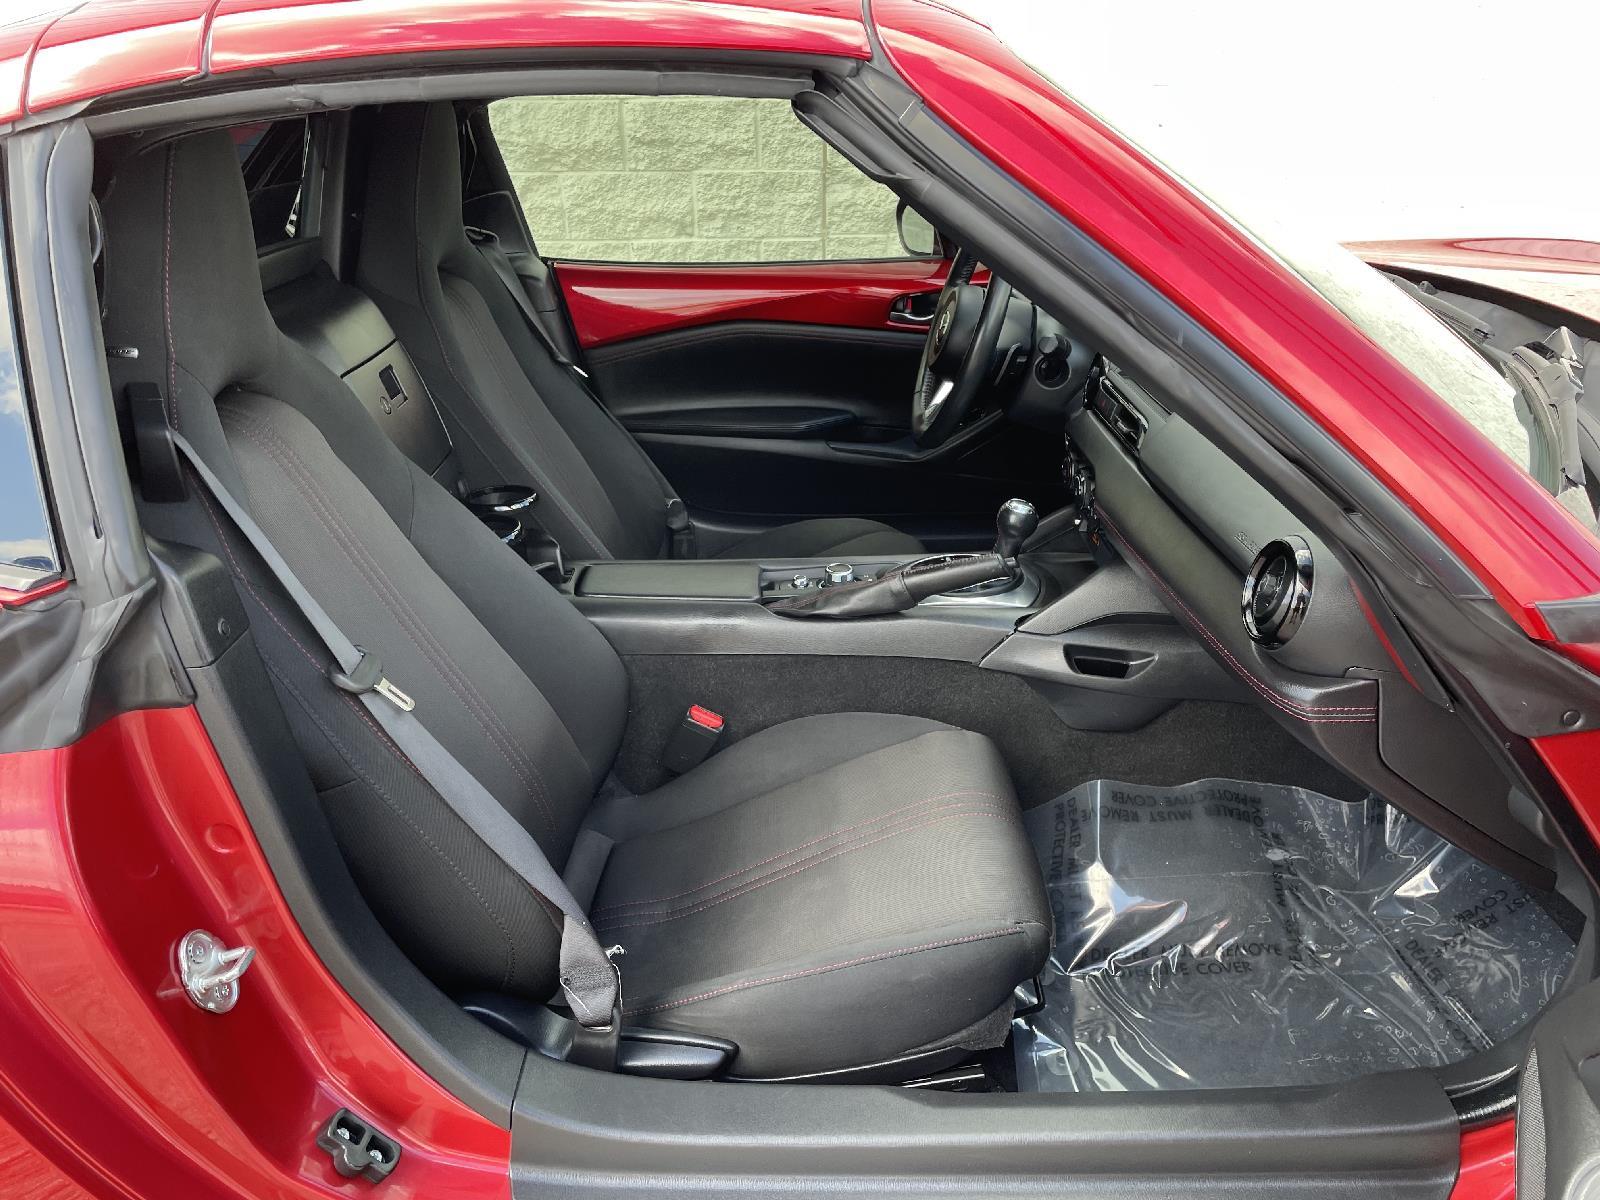 Used 2017 Mazda MX-5 Miata RF Club Convertible for sale in Lincoln NE